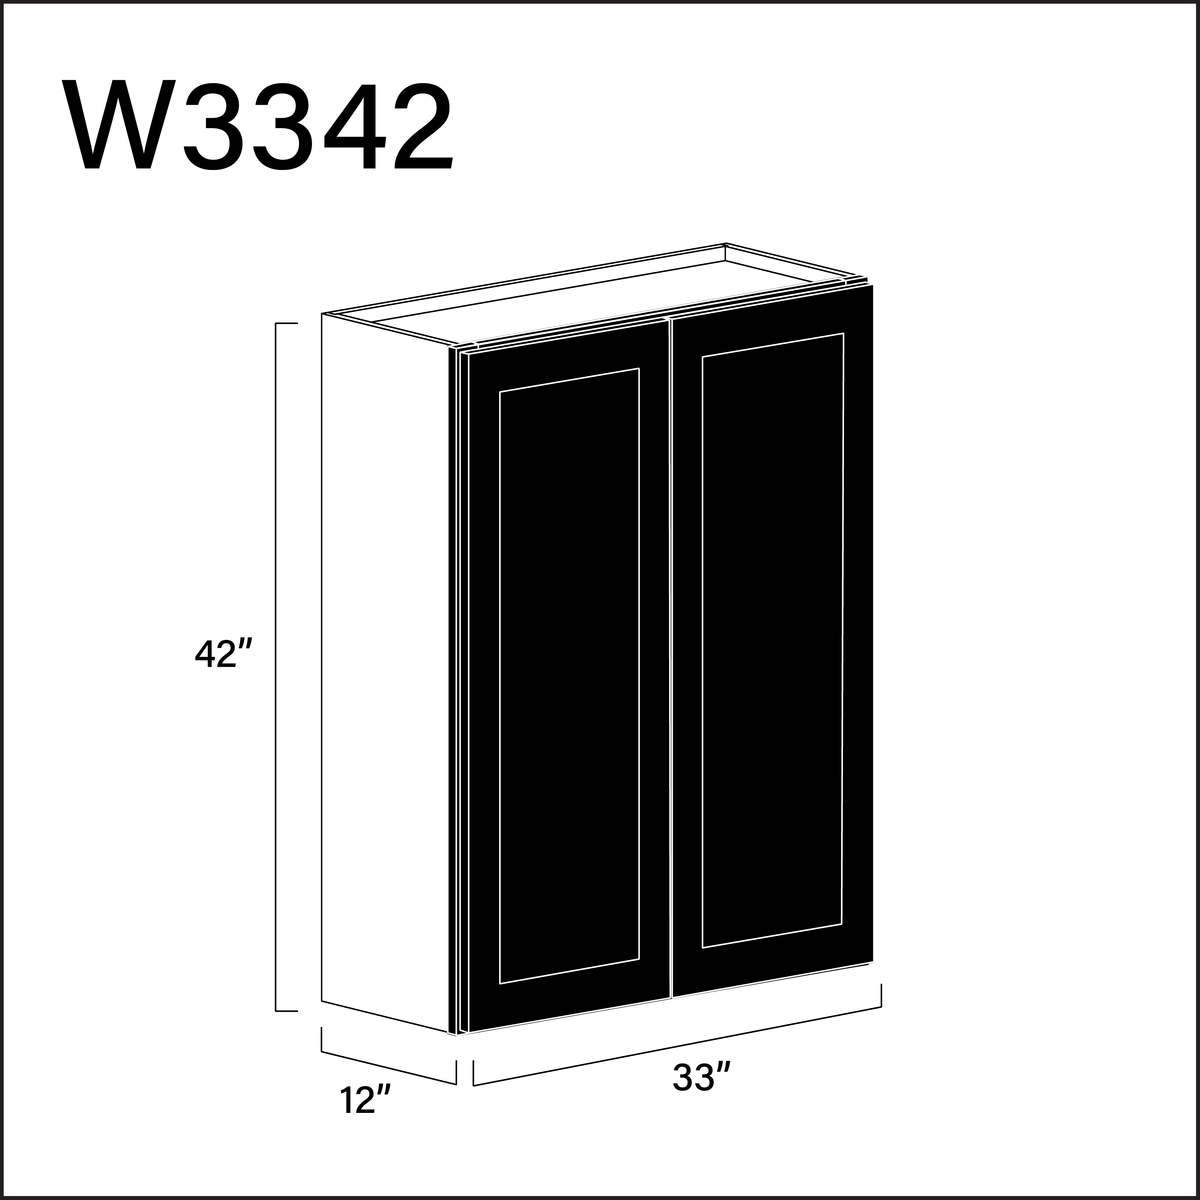 Black Shaker Double Door Wall Cabinet - 33" W x 42" H x 12" D